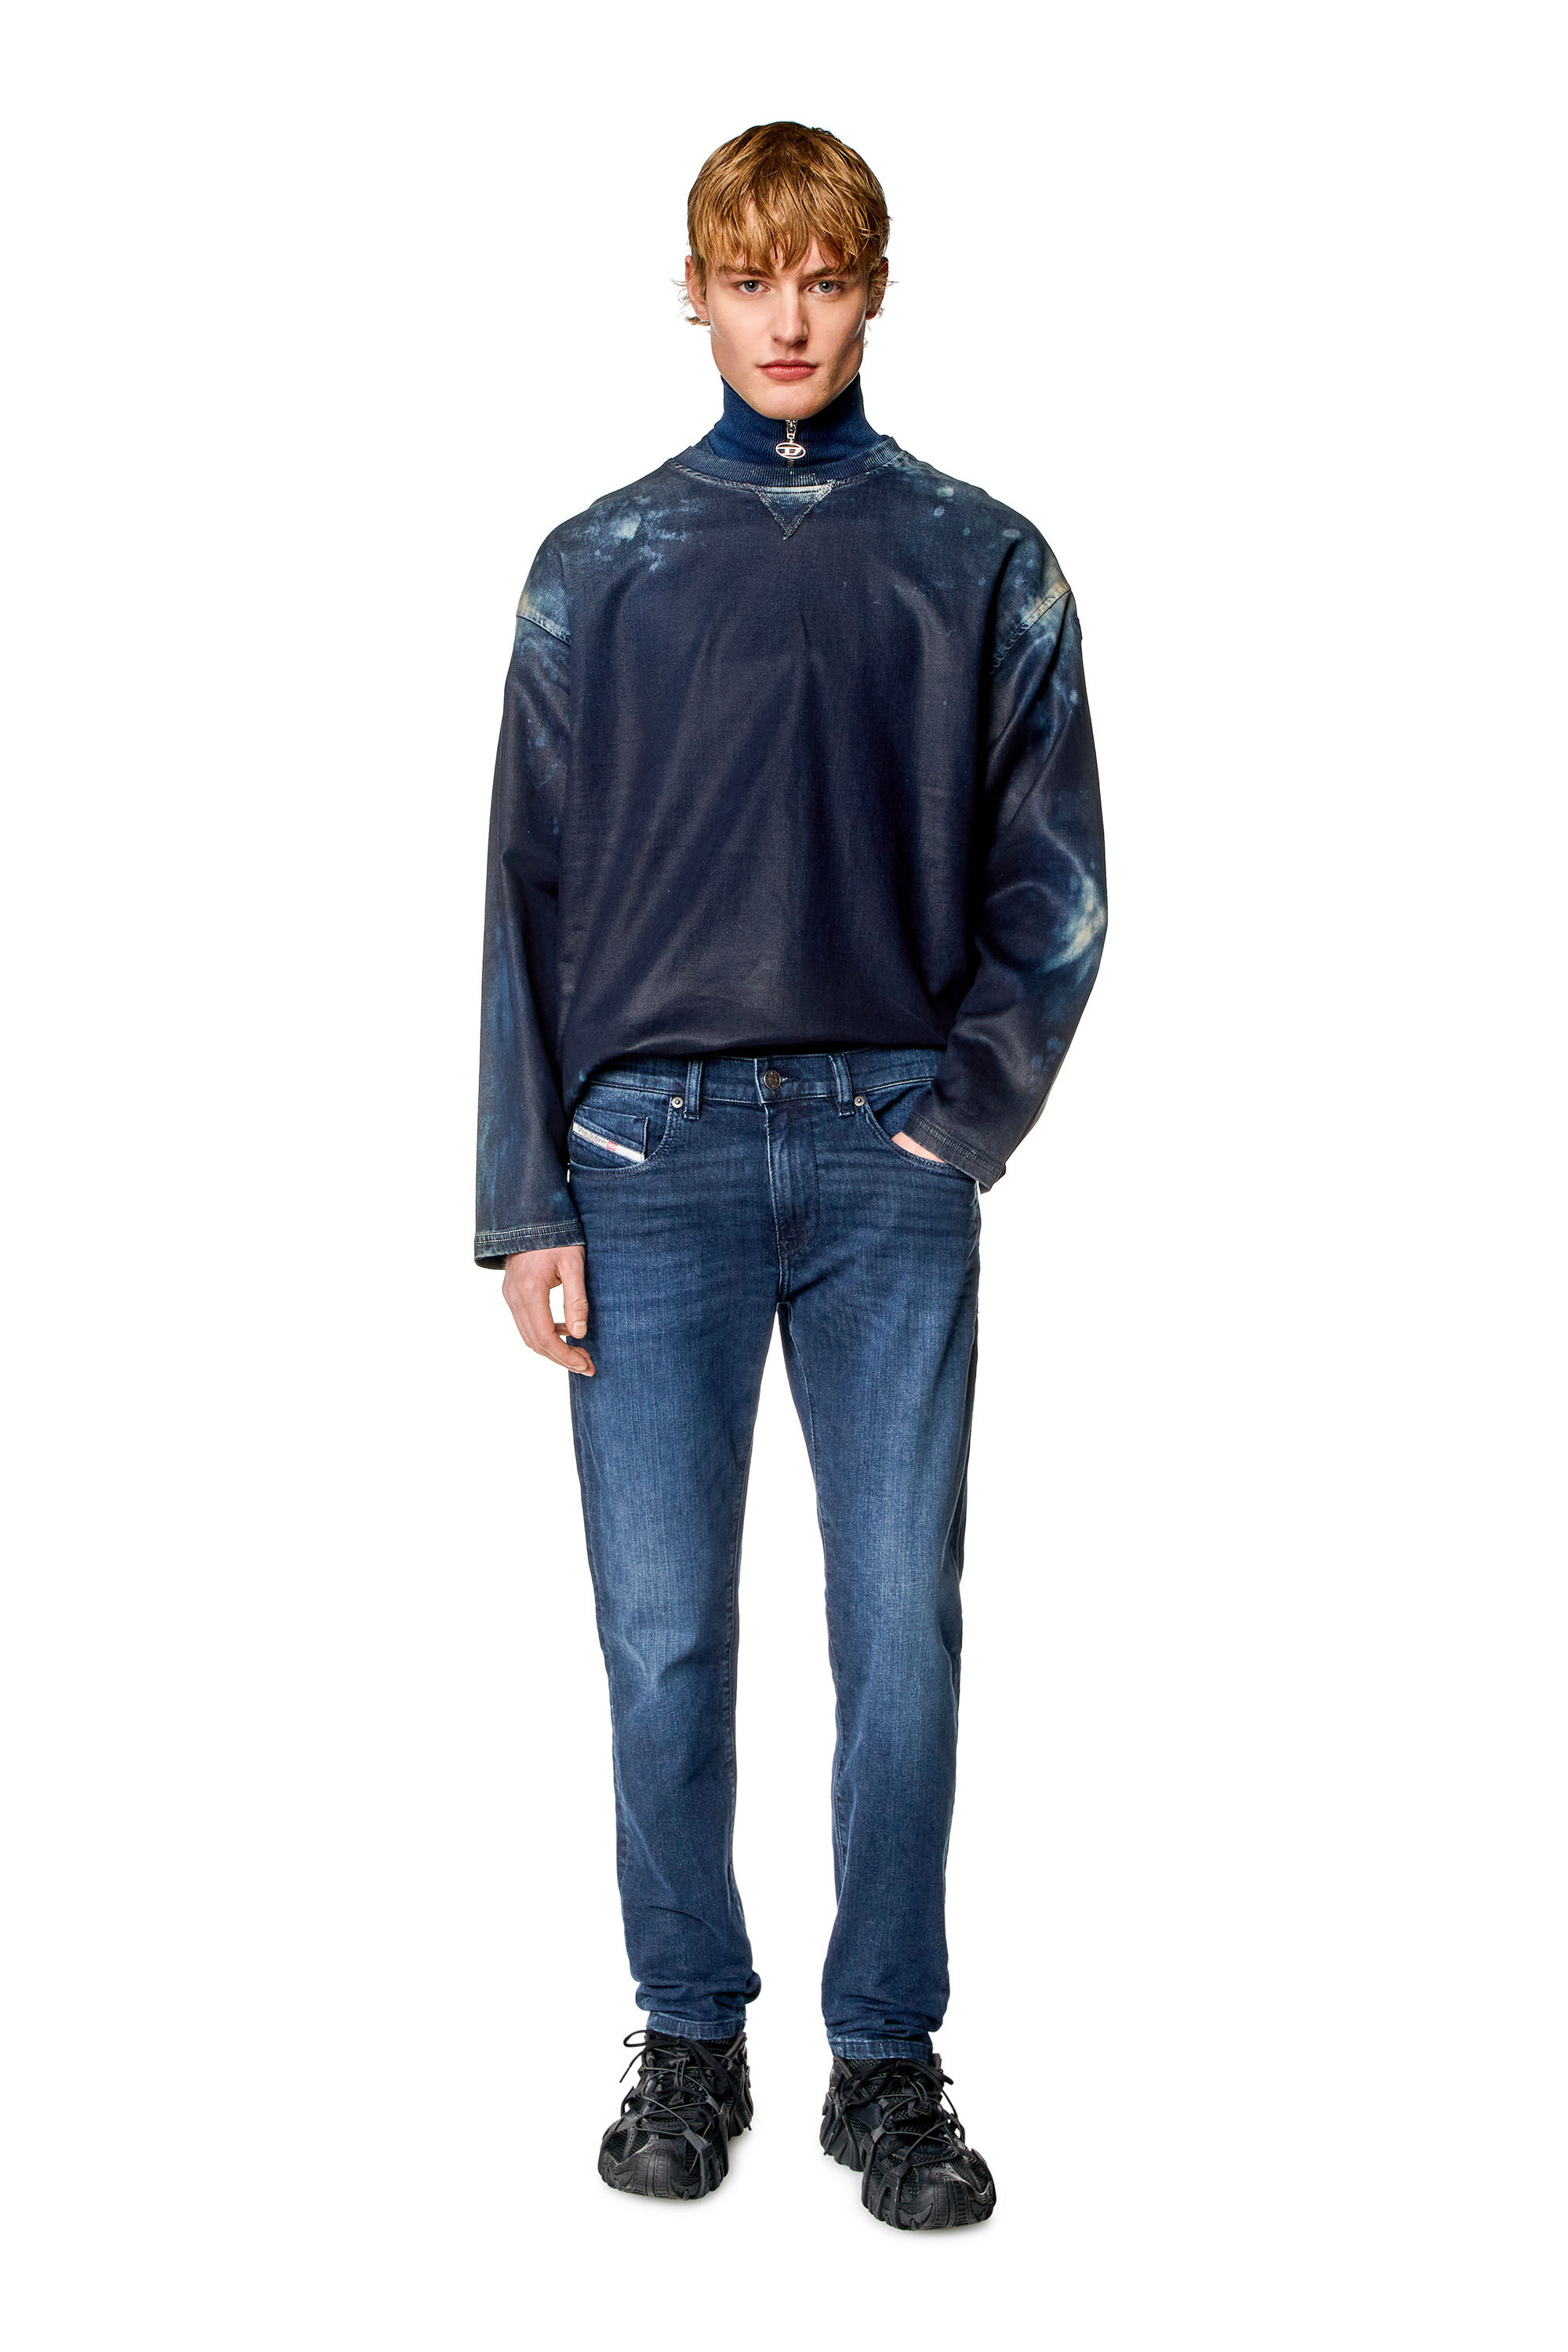 Diesel - Man Slim Jeans 2019 D-Strukt 0CNAA, Dark Blue - Image 1